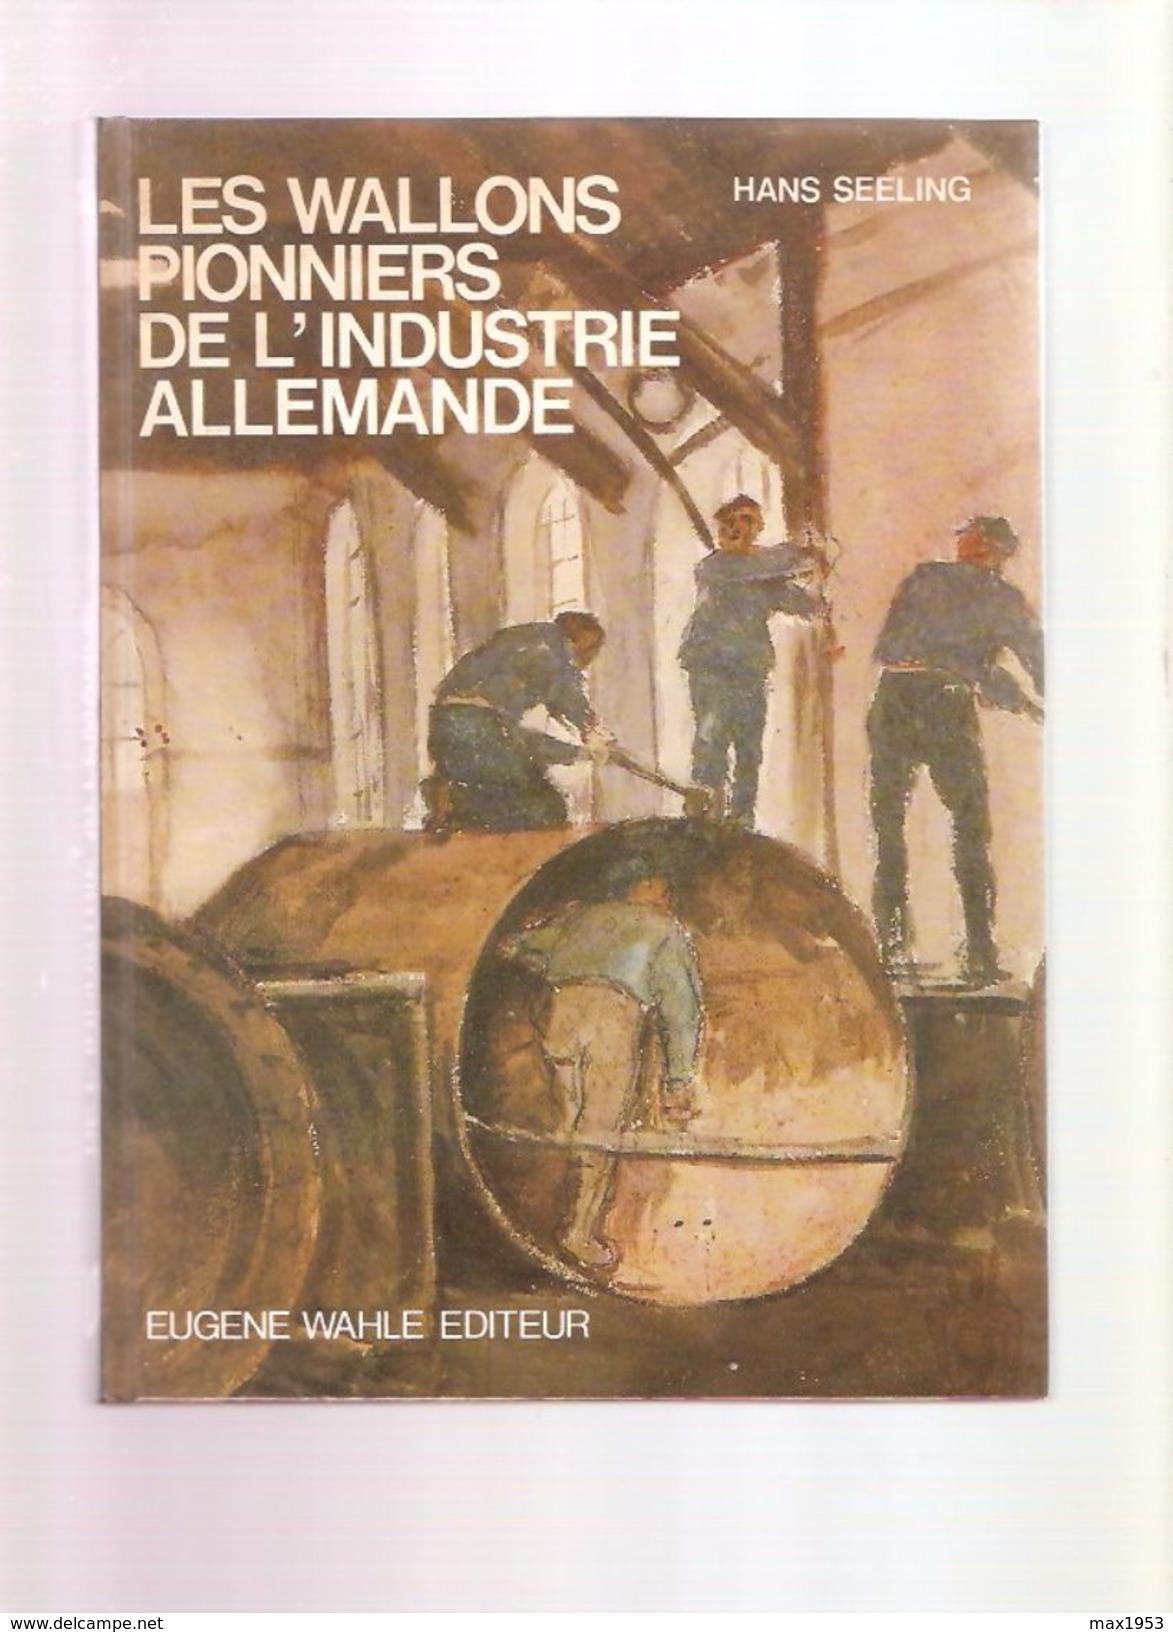 Hans SEELING - LES WALLONS PIONNIERS DE L'INDUSTRIE ALLEMANDE - Eugène Wahle Editeur, Liège 1983 - Belgique